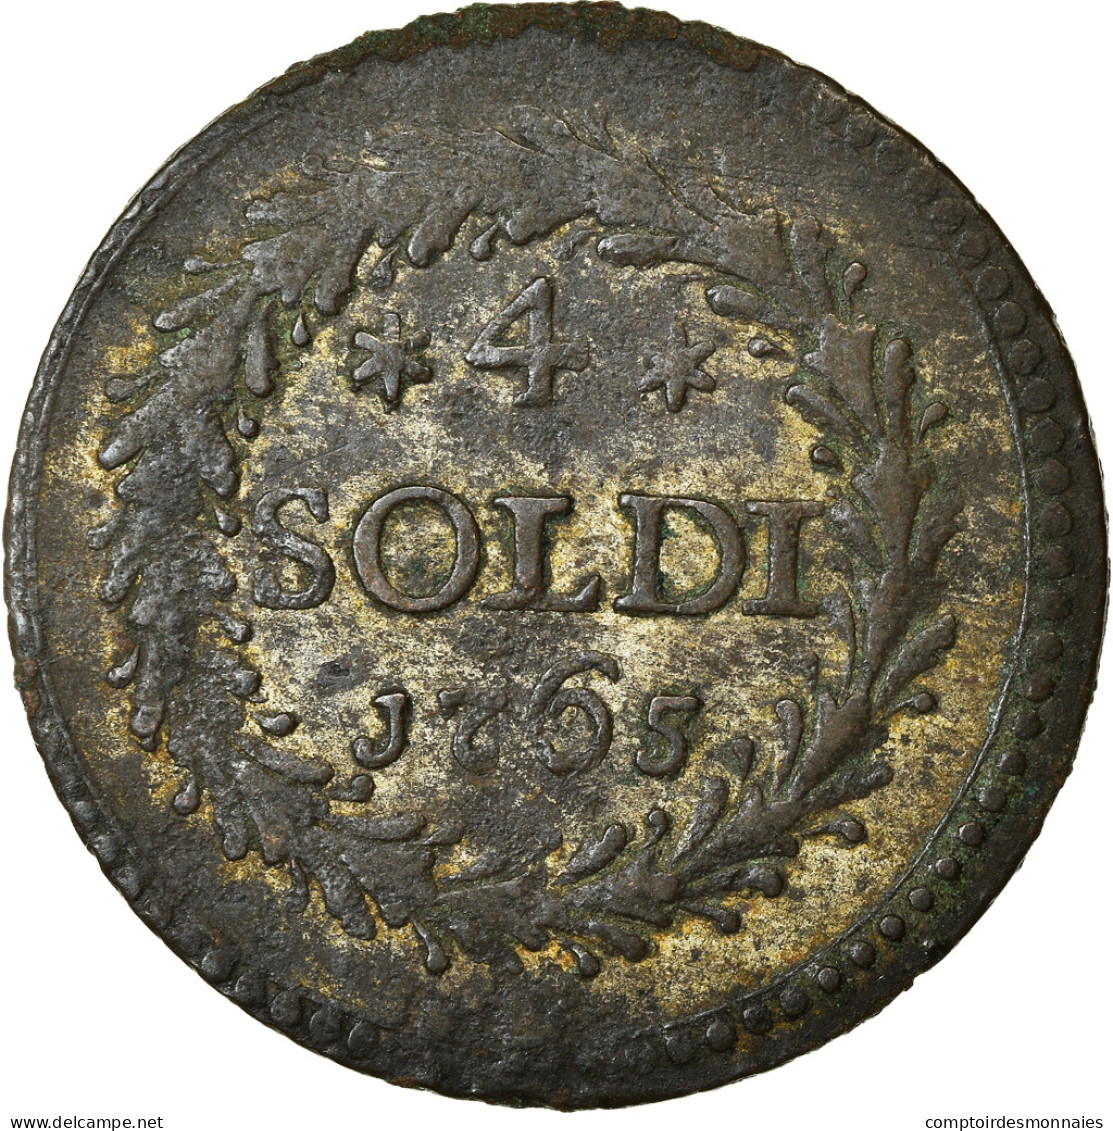 Monnaie, États Italiens, CORSICA, General Pasquale Paoli, 4 Soldi, 1765 - Corsica (1736-1768)